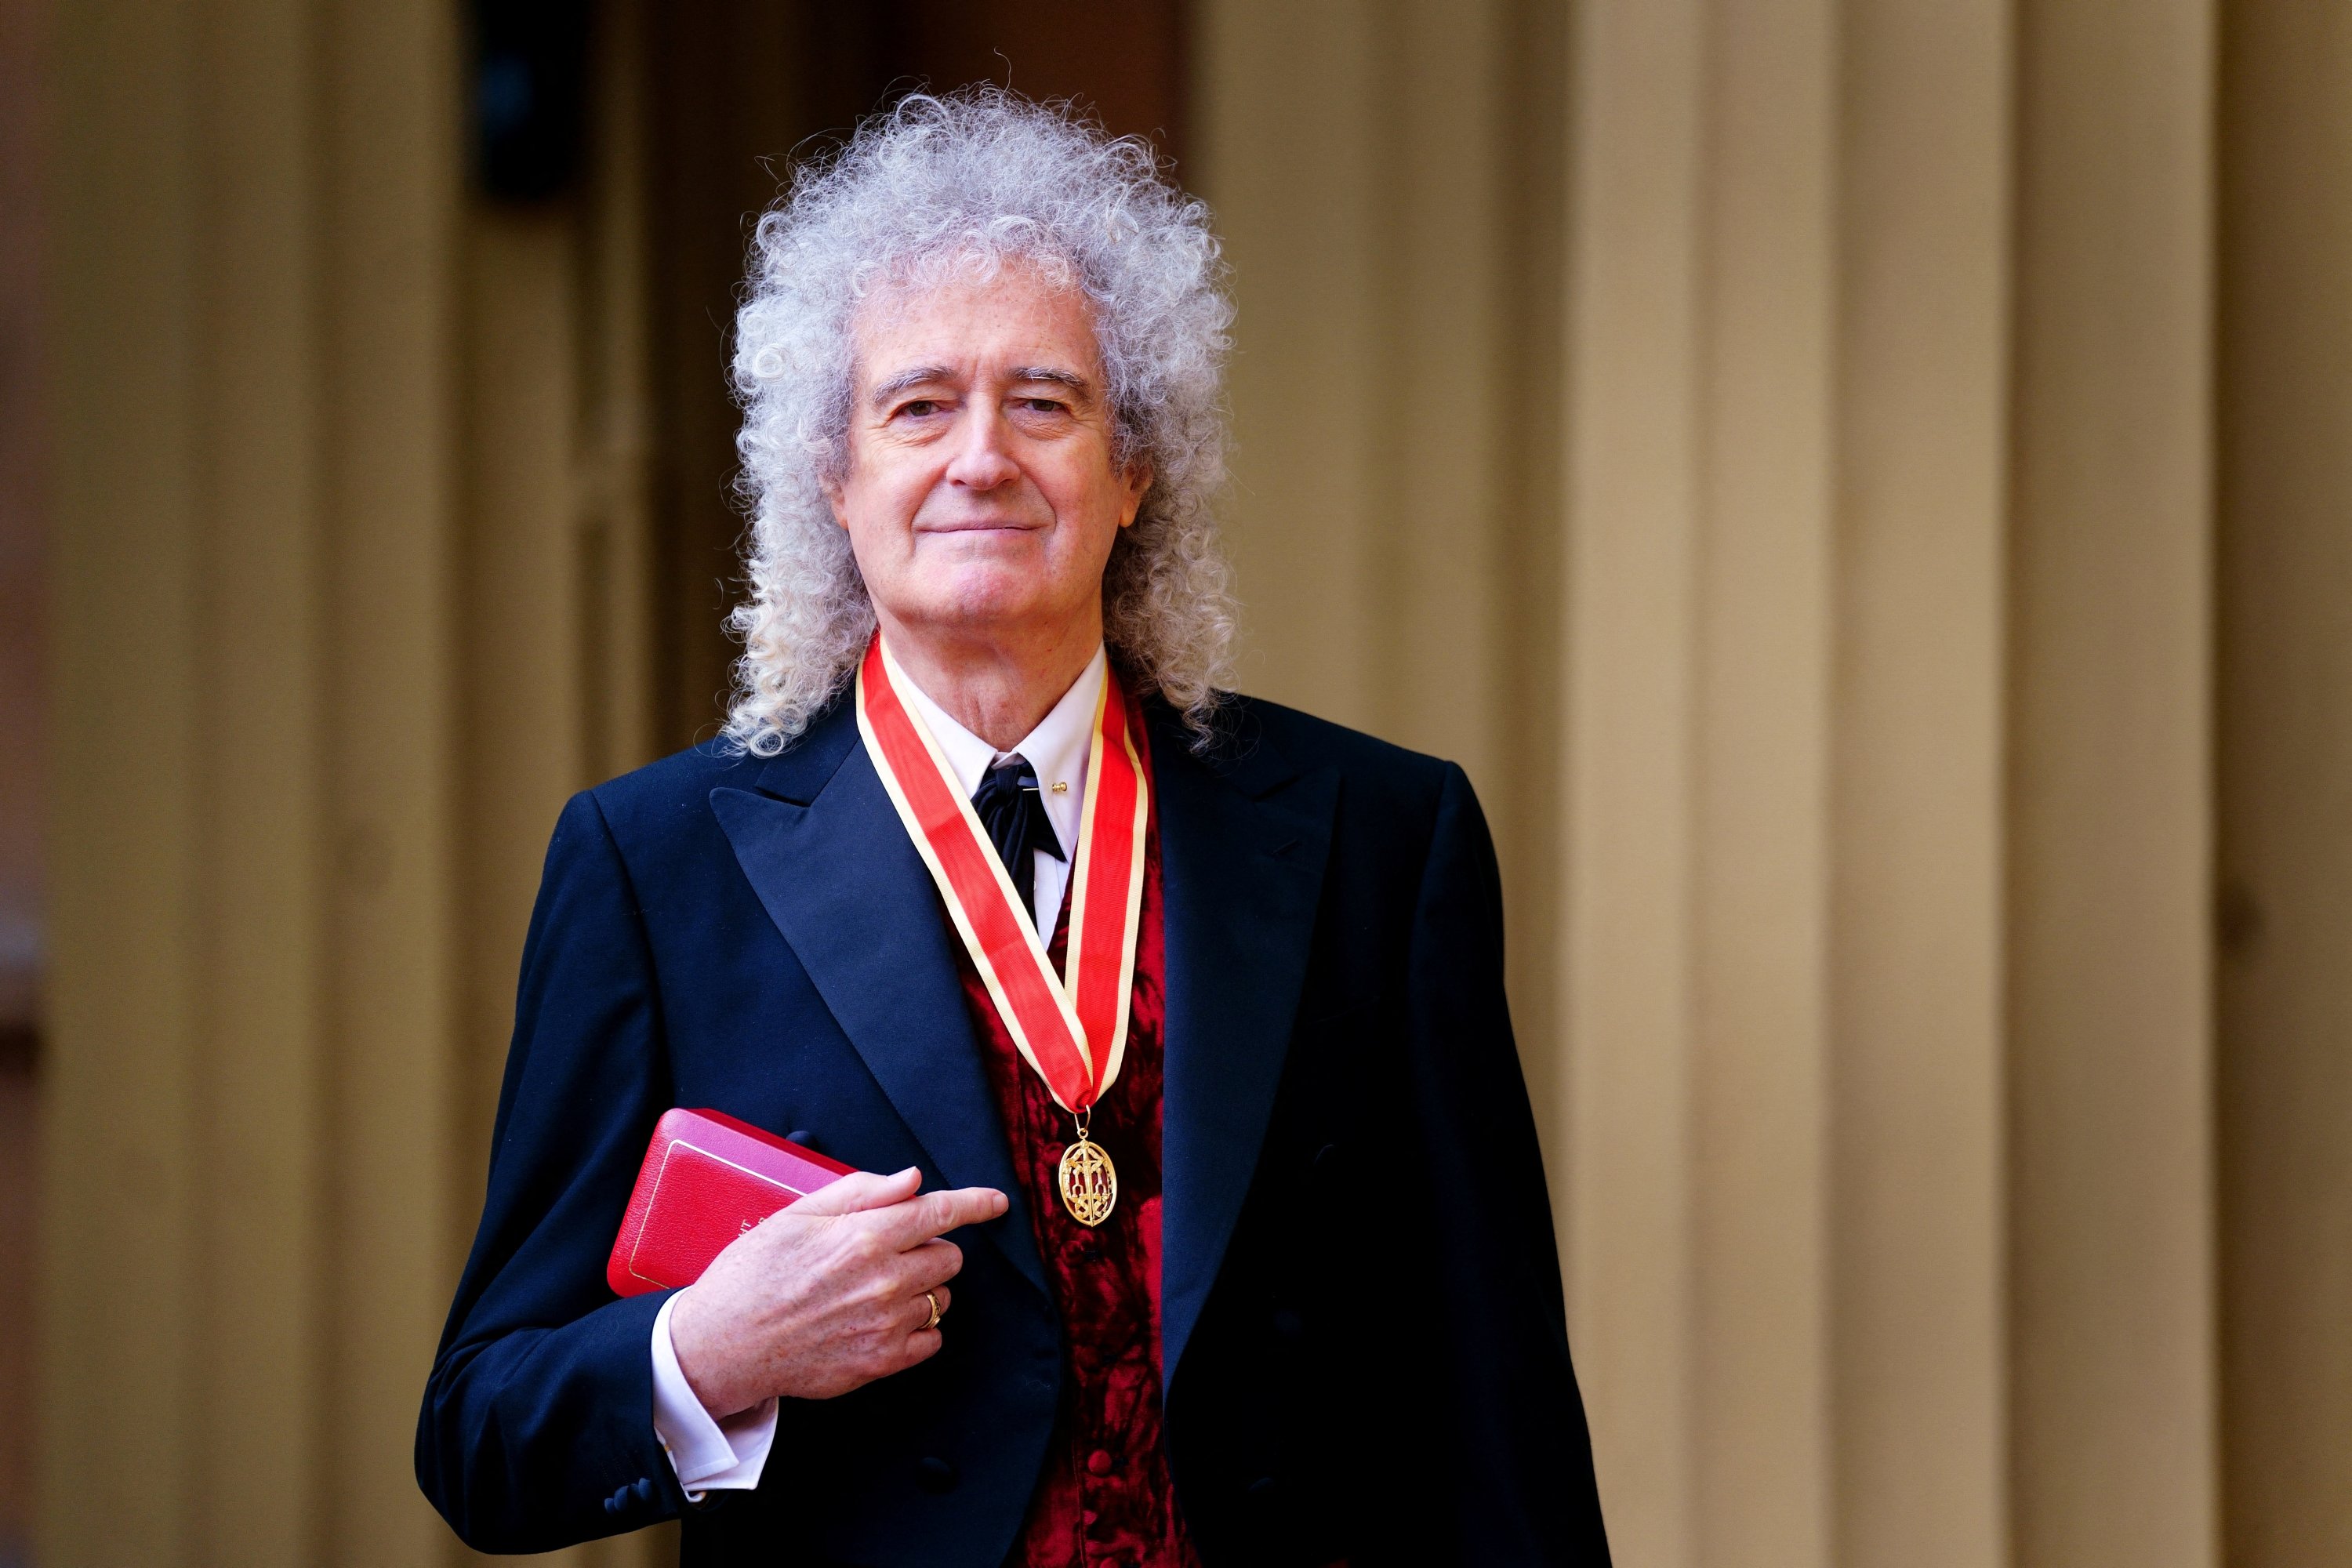 Brian May dari band Queen setelah diangkat menjadi Sarjana Ksatria untuk layanan musik dan amal oleh Raja Charles III selama upacara penobatan di Istana Buckingham, London, Inggris, 14 Maret 2023. (Foto Reuters)